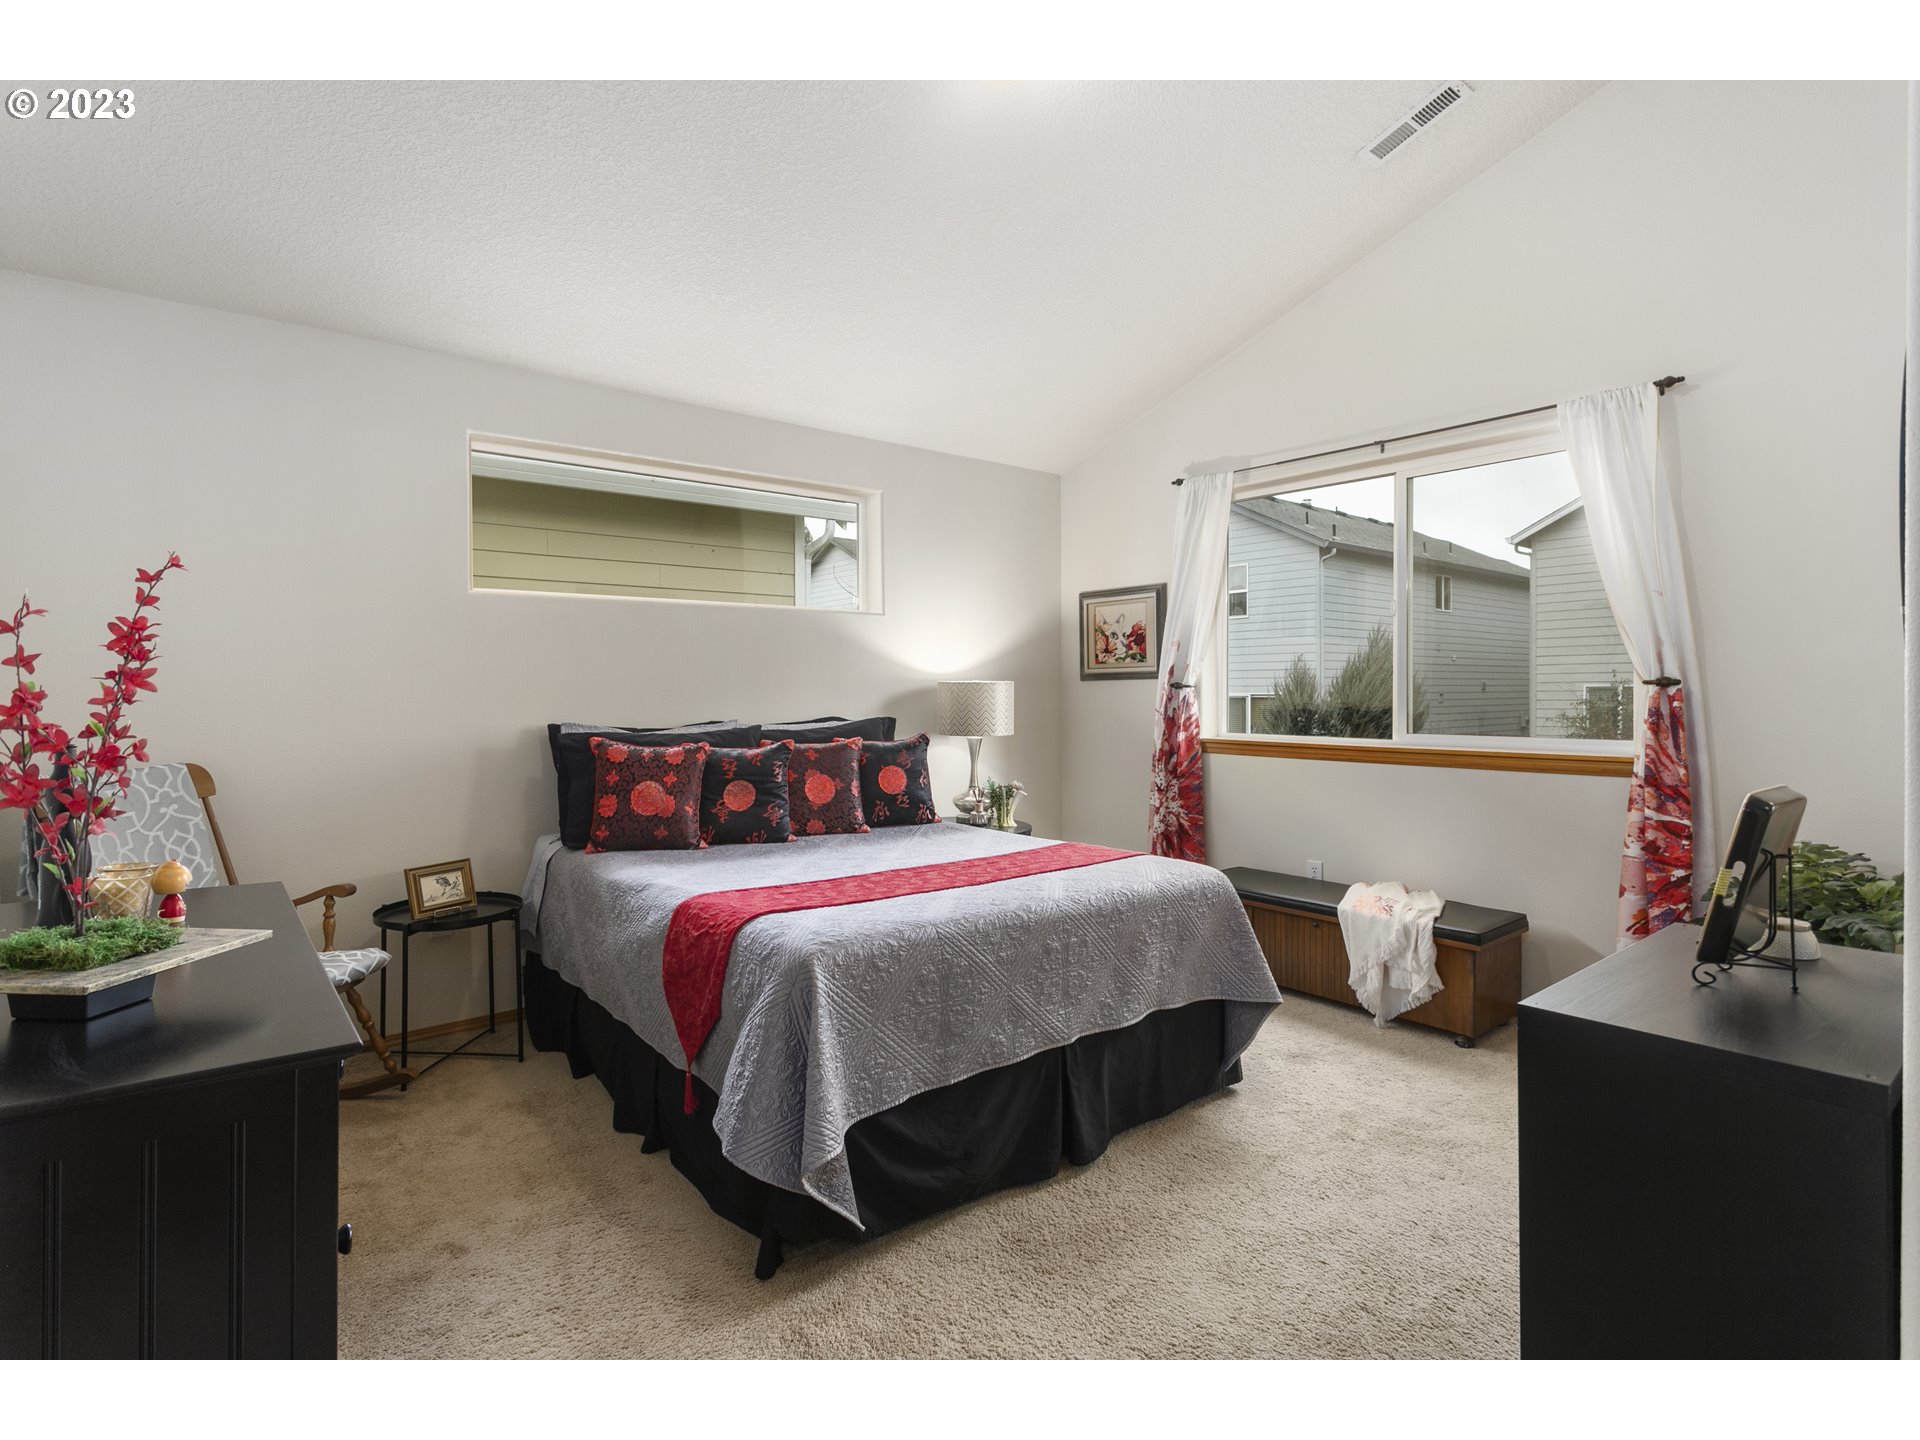 Owner's Suite Bedroom-Vaulted Ceilings